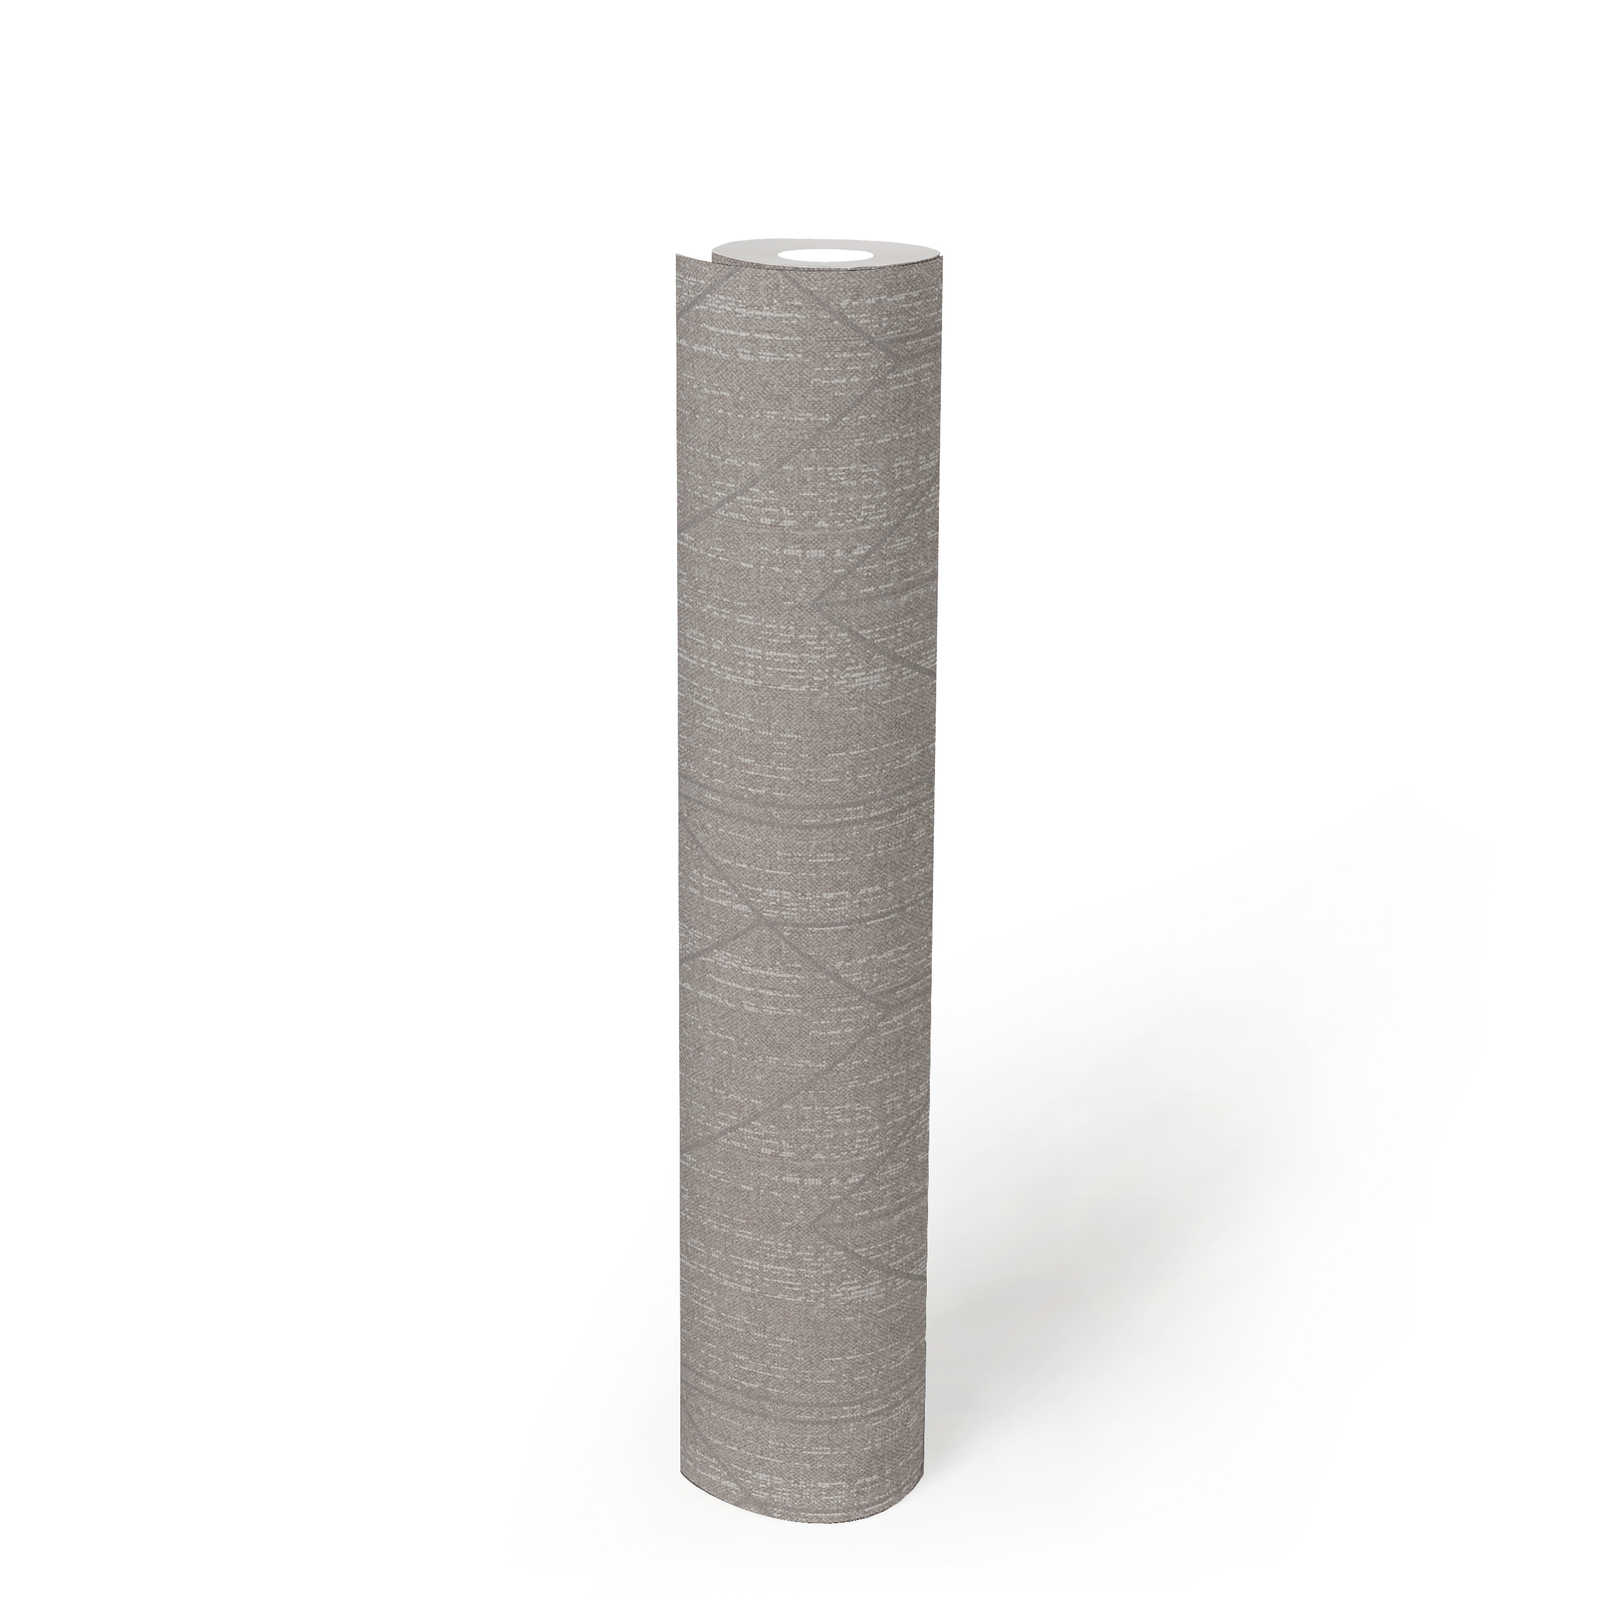             Papier peint aspect textile avec motif structuré & argenté - gris
        